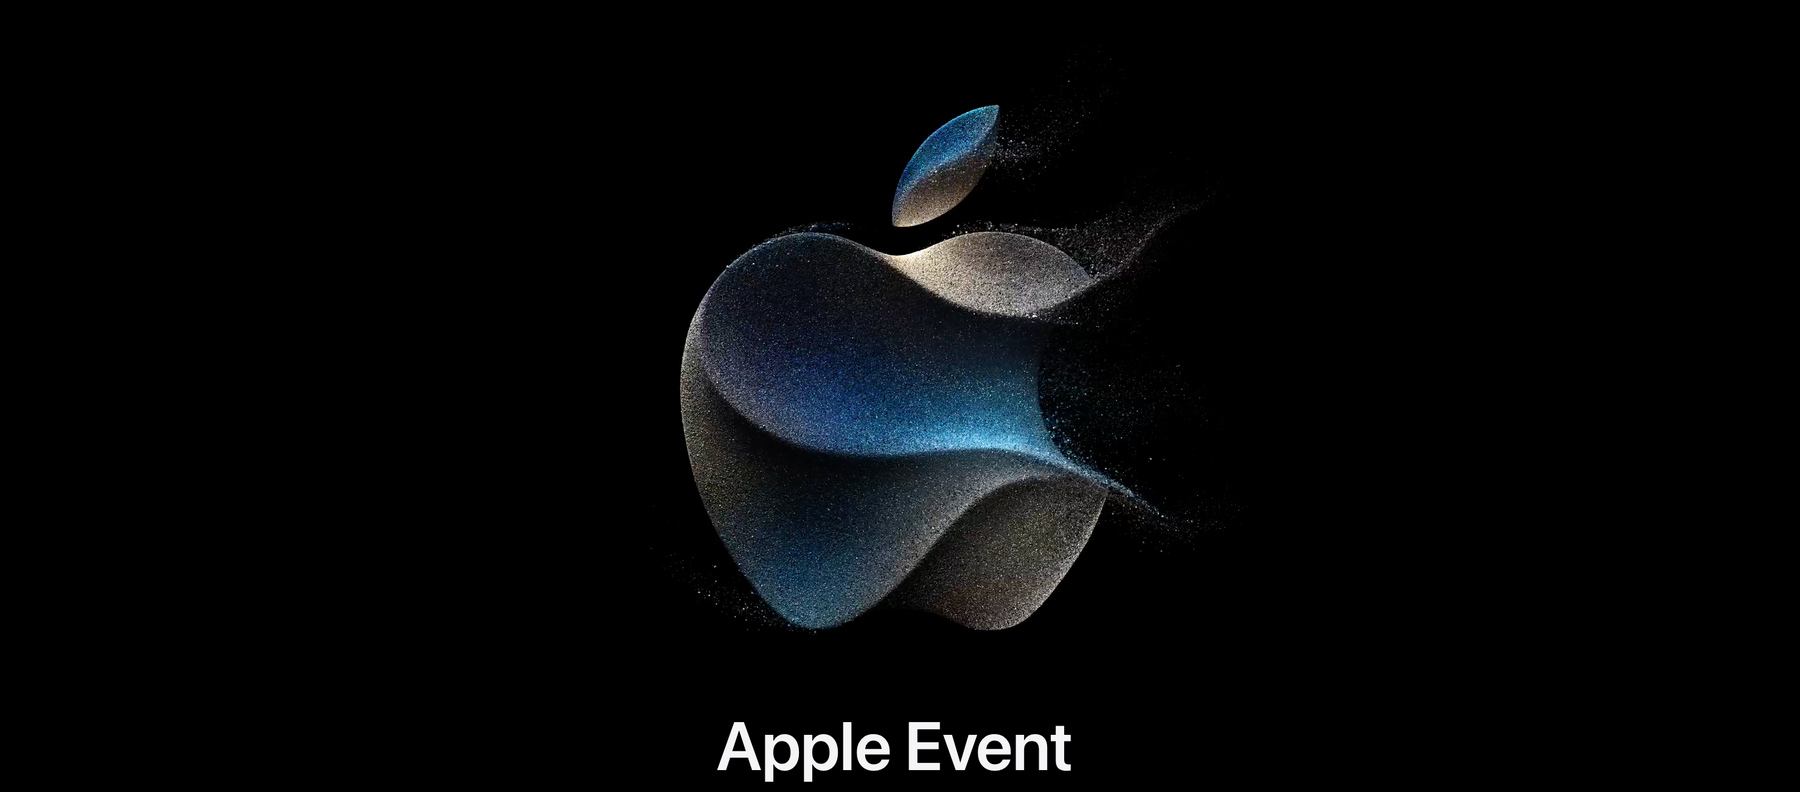 TP-Banner für das Apple Event - die Keynote2023